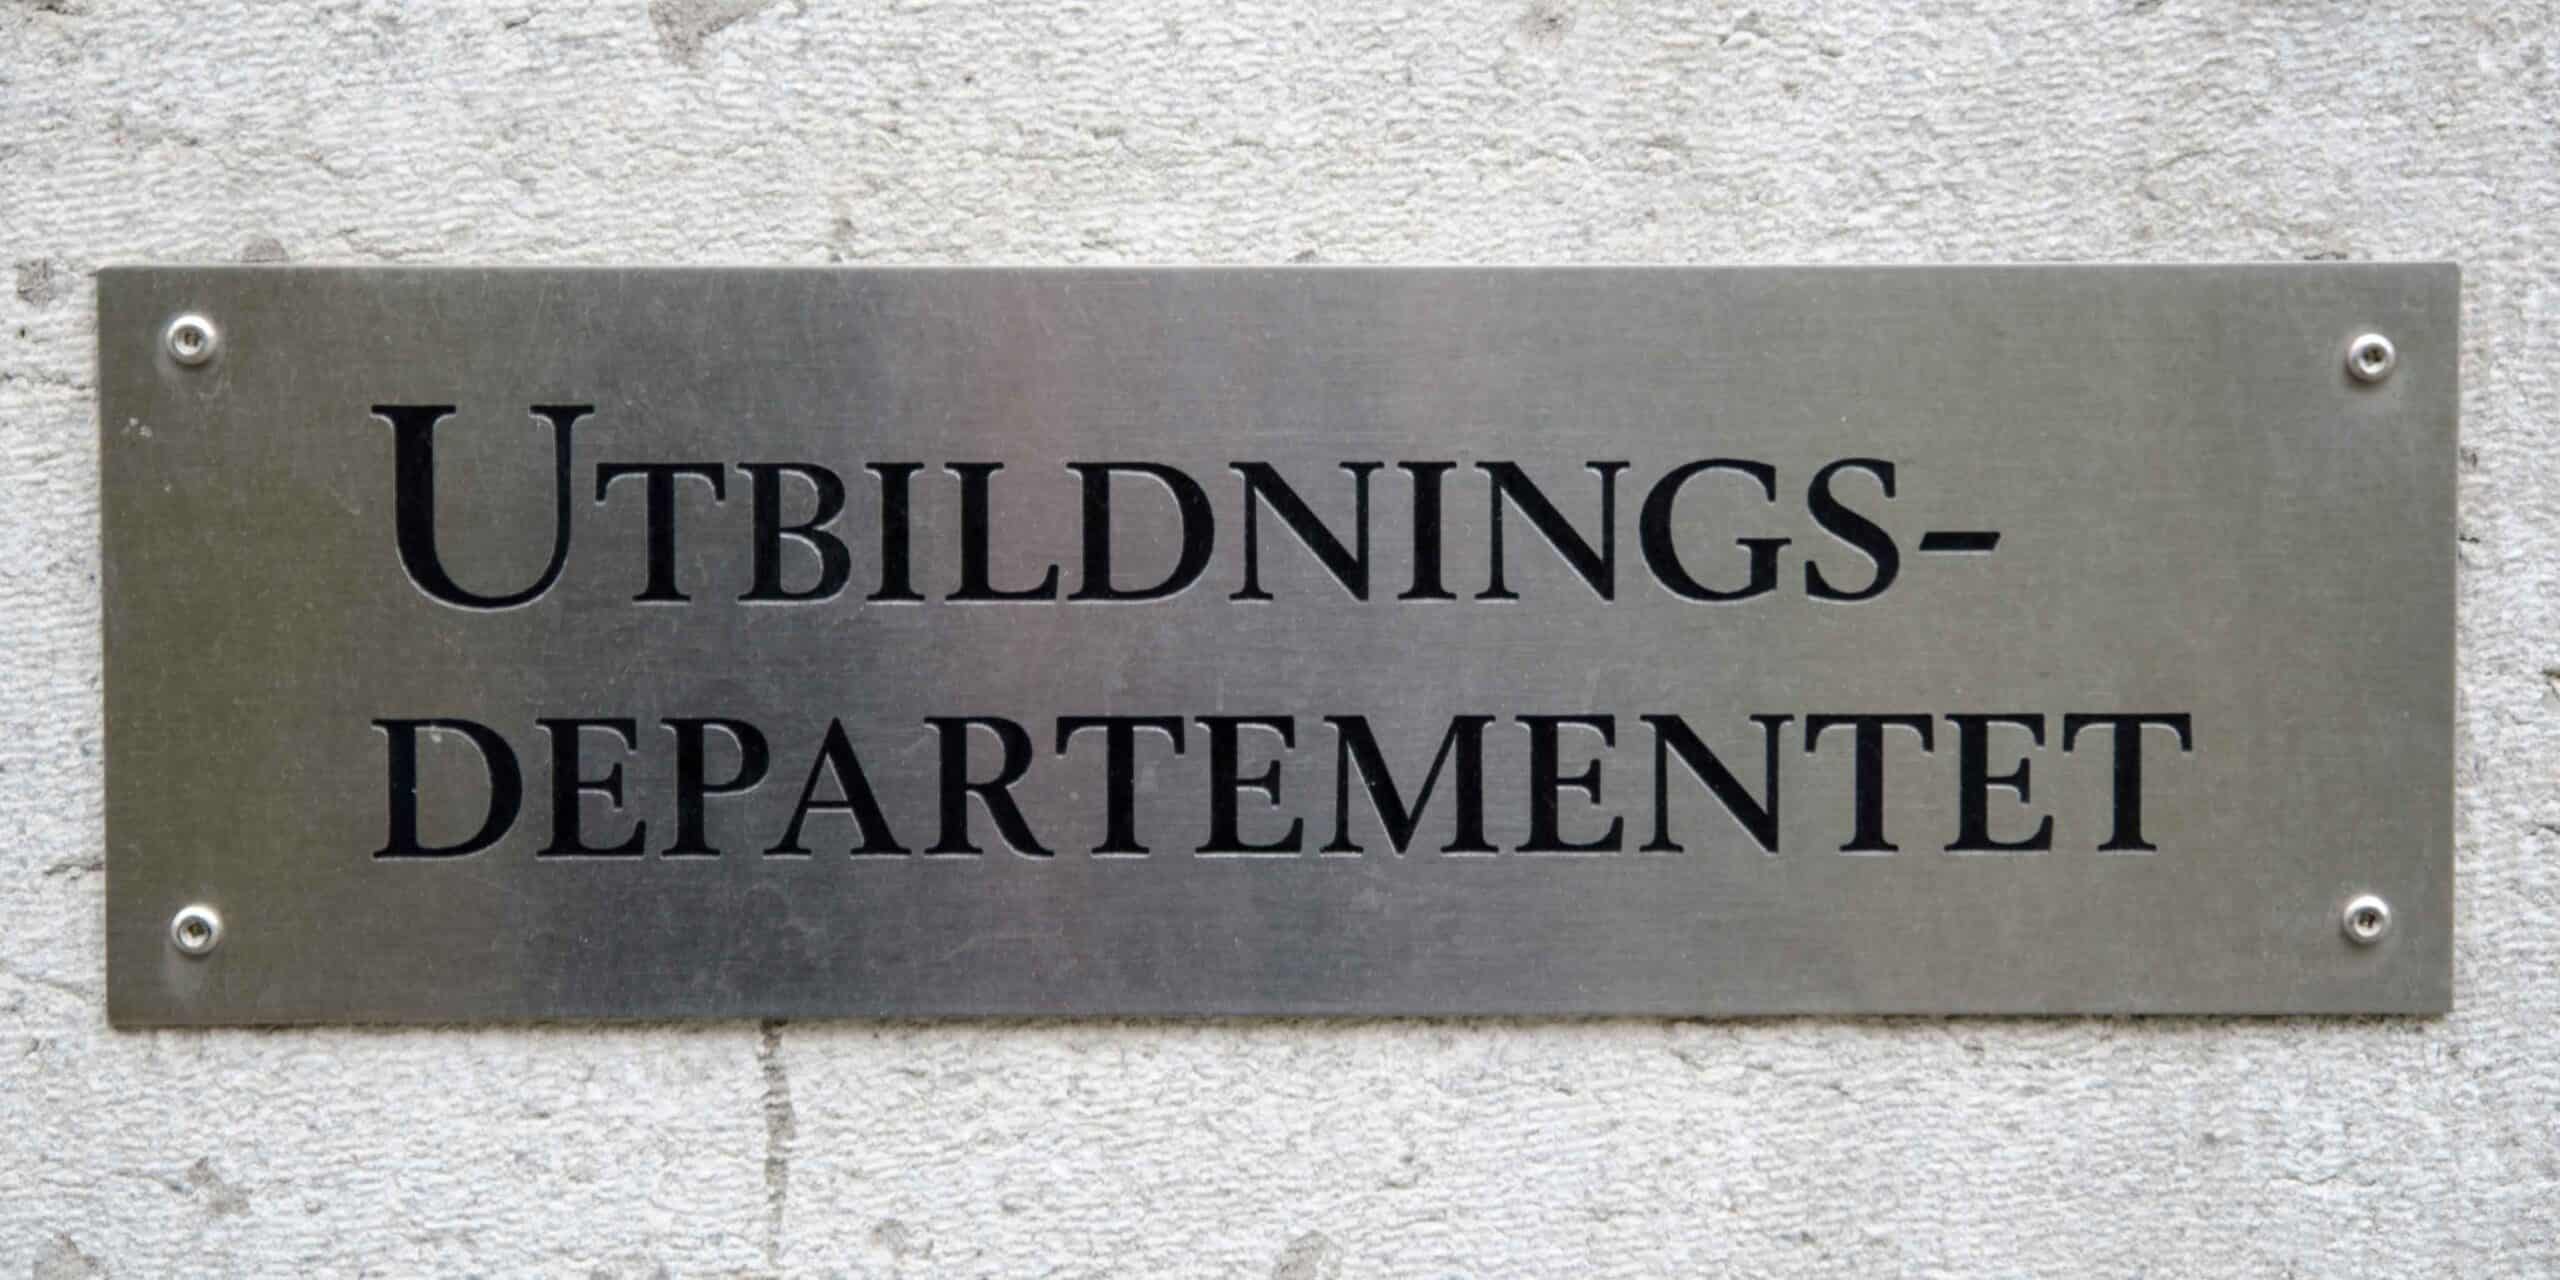 En skylt som visar texten "Utbildningsdepartementet"